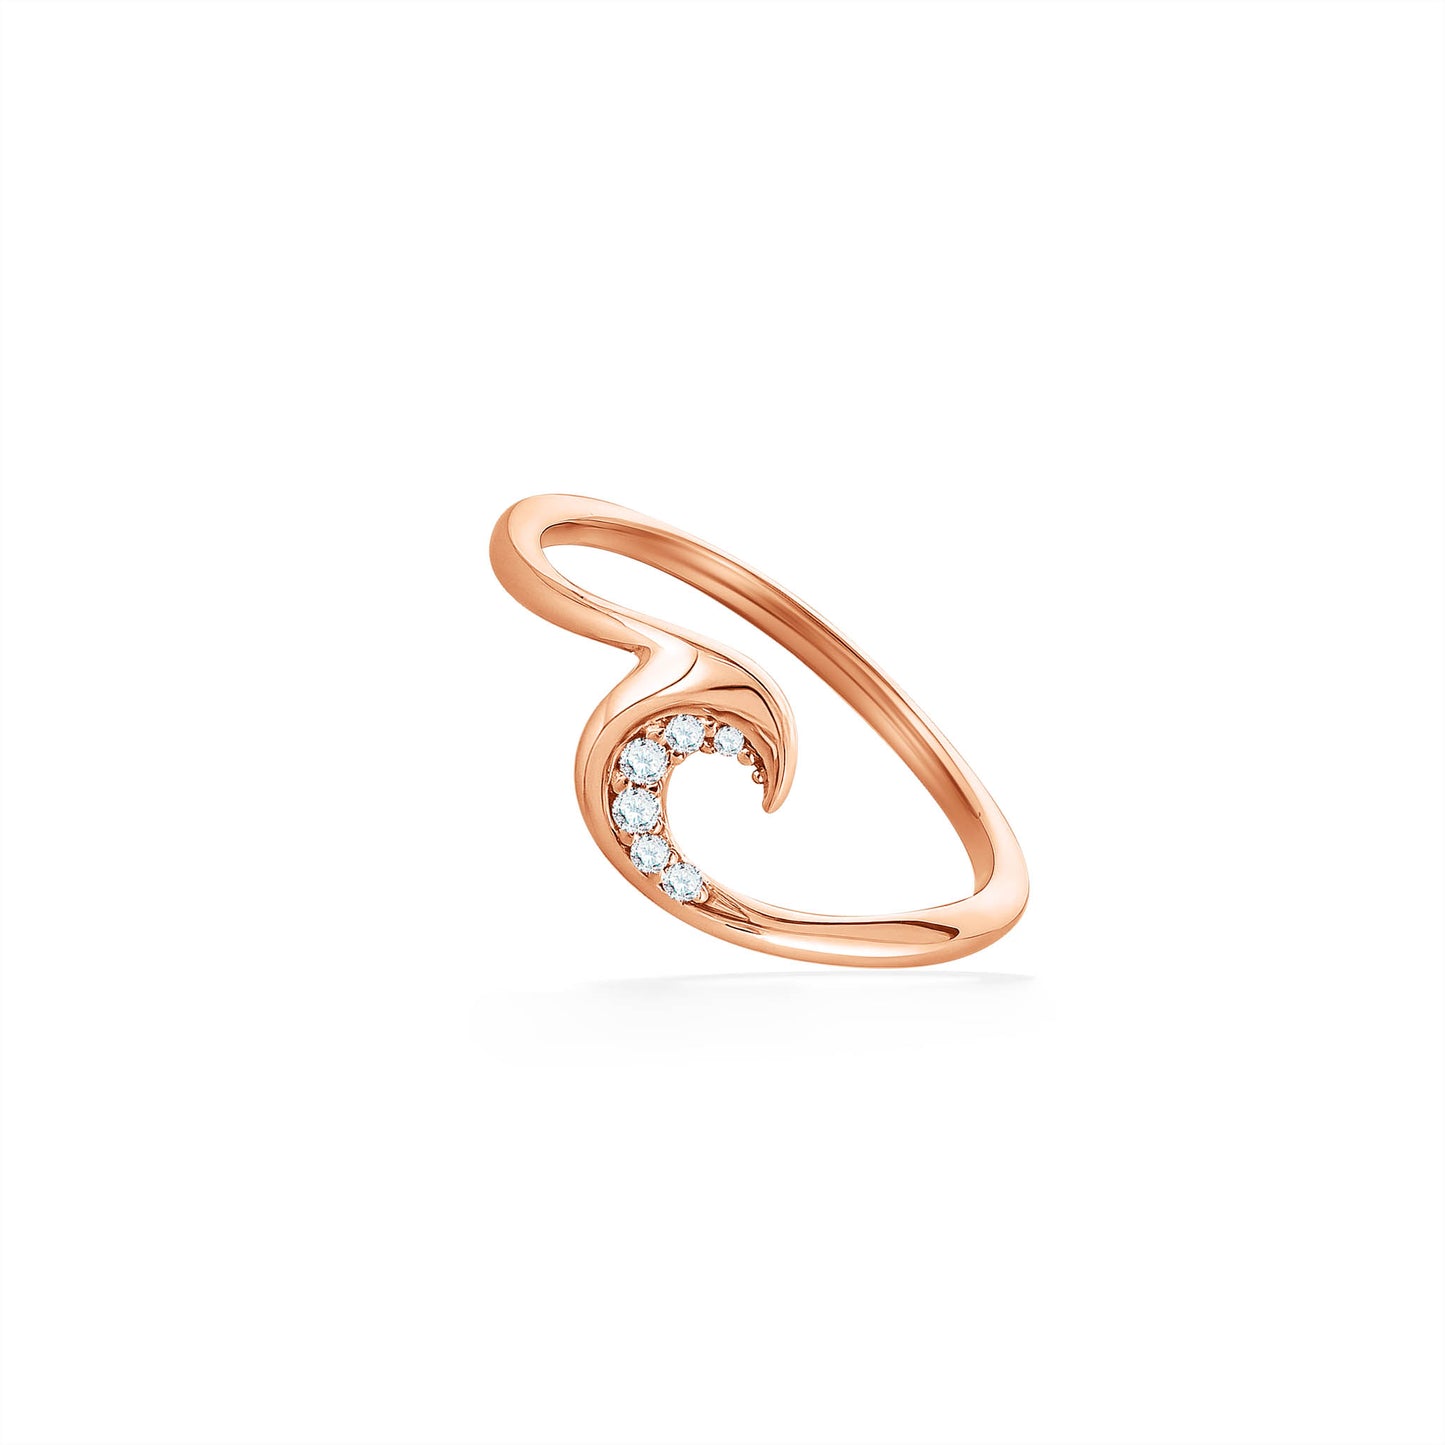 44633 - 14K Rose Gold - Ocean Swell Ring